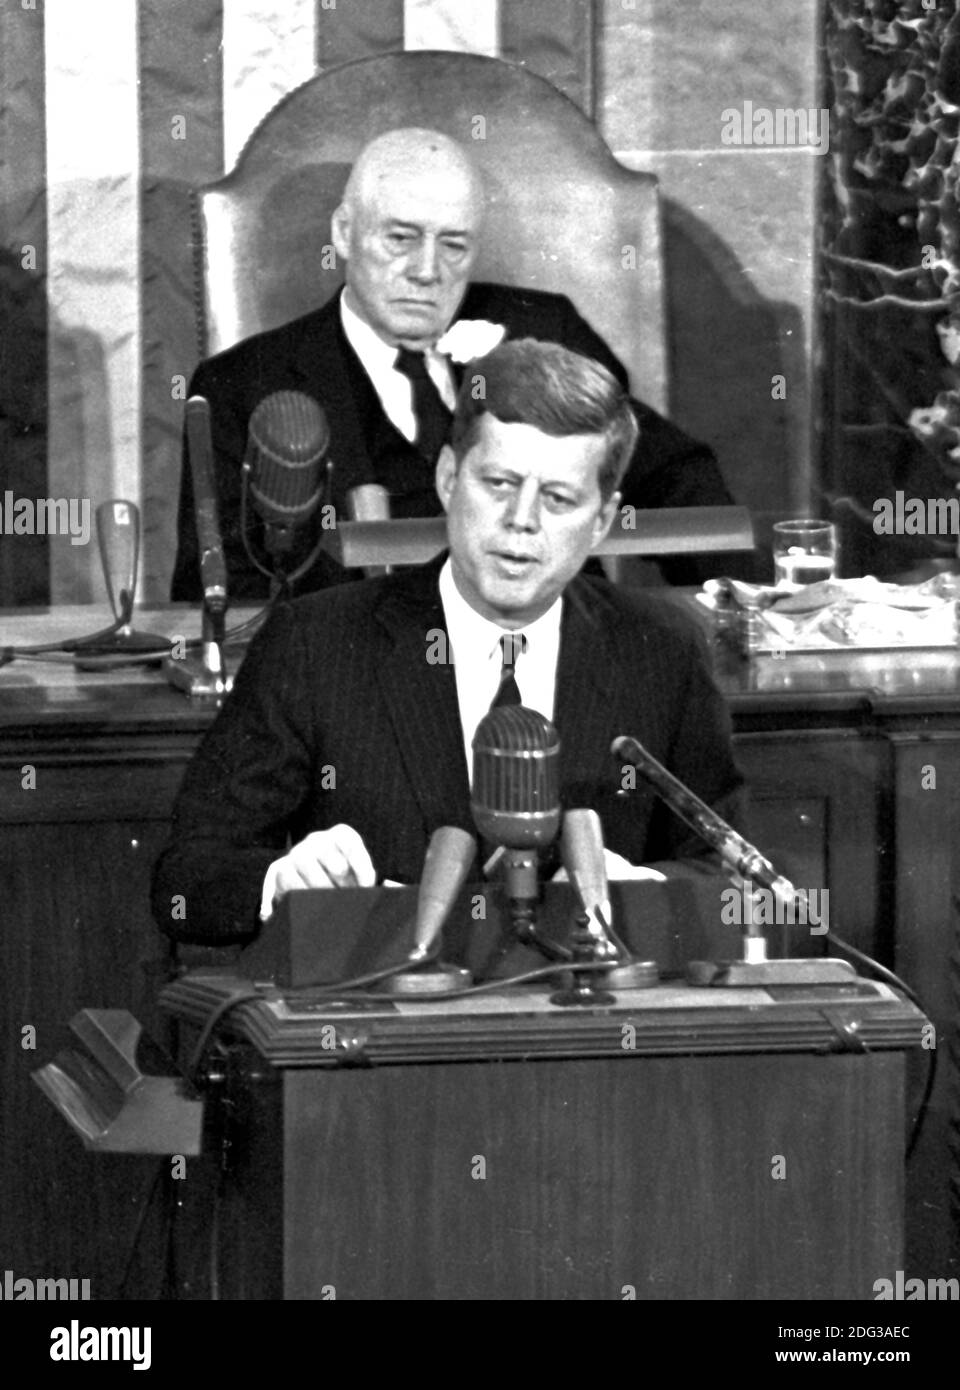 Le président des États-Unis John F. Kennedy a exposé sa vision de l'exploration habitée de l'espace lors d'une session conjointe du Congrès des États-Unis, à Washington, DC, Etats-Unis, le 25 mai 1961 quand il a déclaré, '... Je crois que cette nation devrait s'engager à atteindre l'objectif, avant que cette décennie soit terminée, D'atterrir un homme sur la Lune et de le ramener en toute sécurité sur la Terre. Cet objectif a été atteint lorsque l'astronaute Neil A. Armstrong est devenu le premier humain à marcher sur la Lune à 10 h 56 HAE, le 20 juillet 1969. Le Président de la Chambre Sam T. Rayburn (démocrate du Texas) en arrière-plan. Photo par AR Banque D'Images